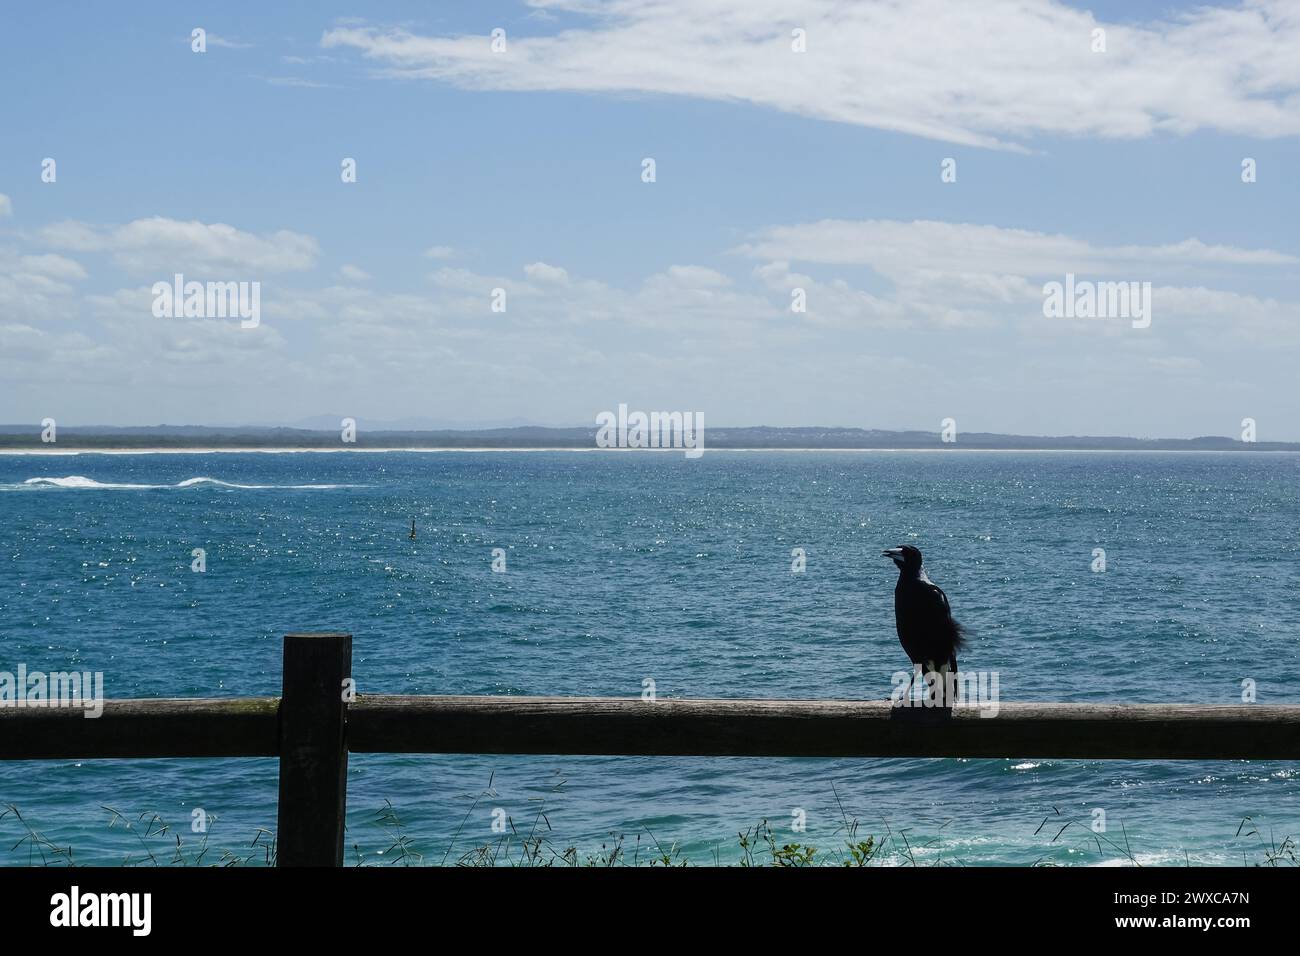 Magpie australienne debout sur une clôture en bois devant l'océan, Australie Banque D'Images